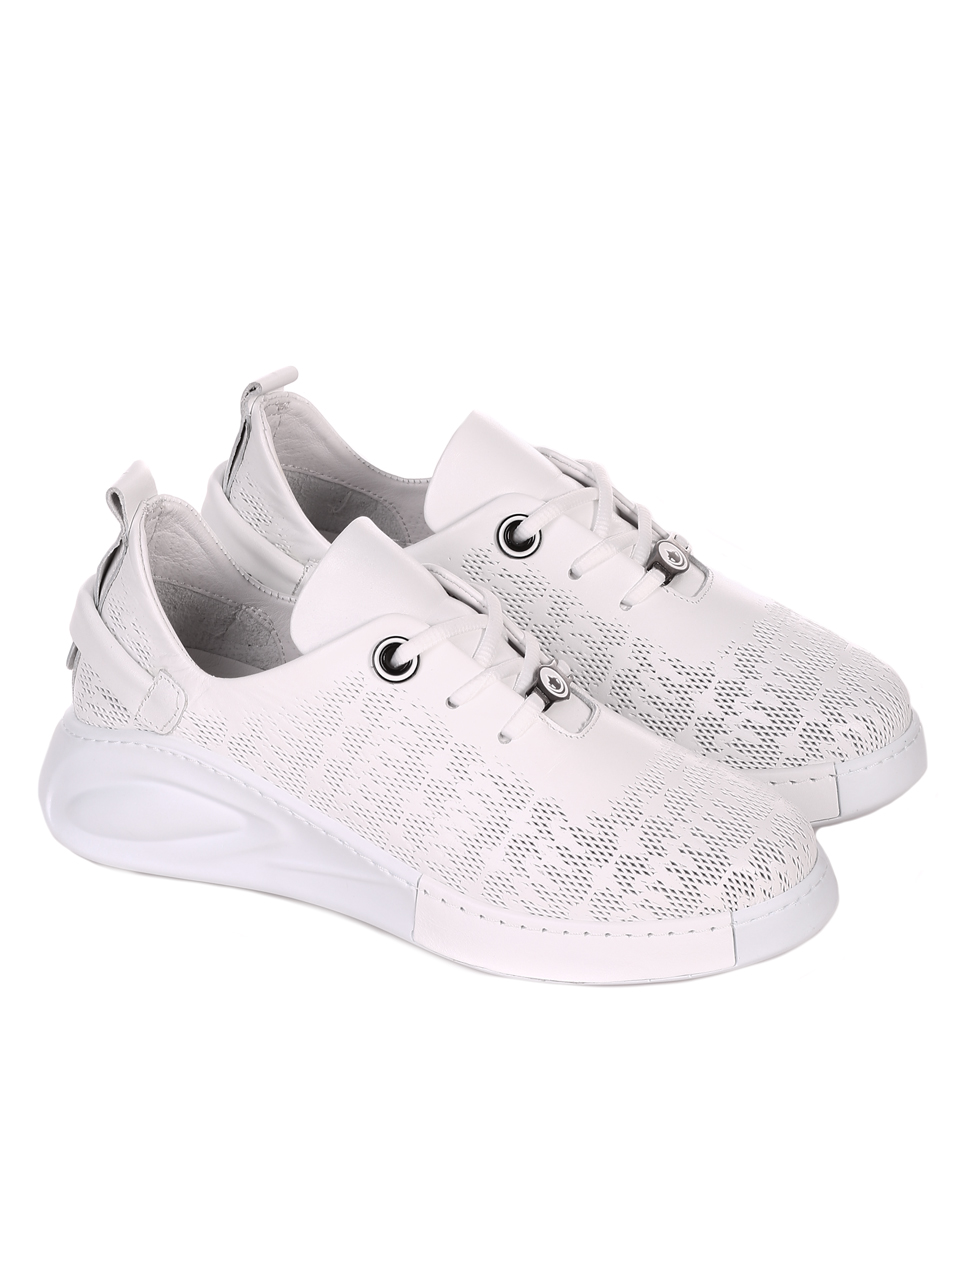 Ежедневни дамски обувки от естествена кожа в бяло 3AT-22313 white